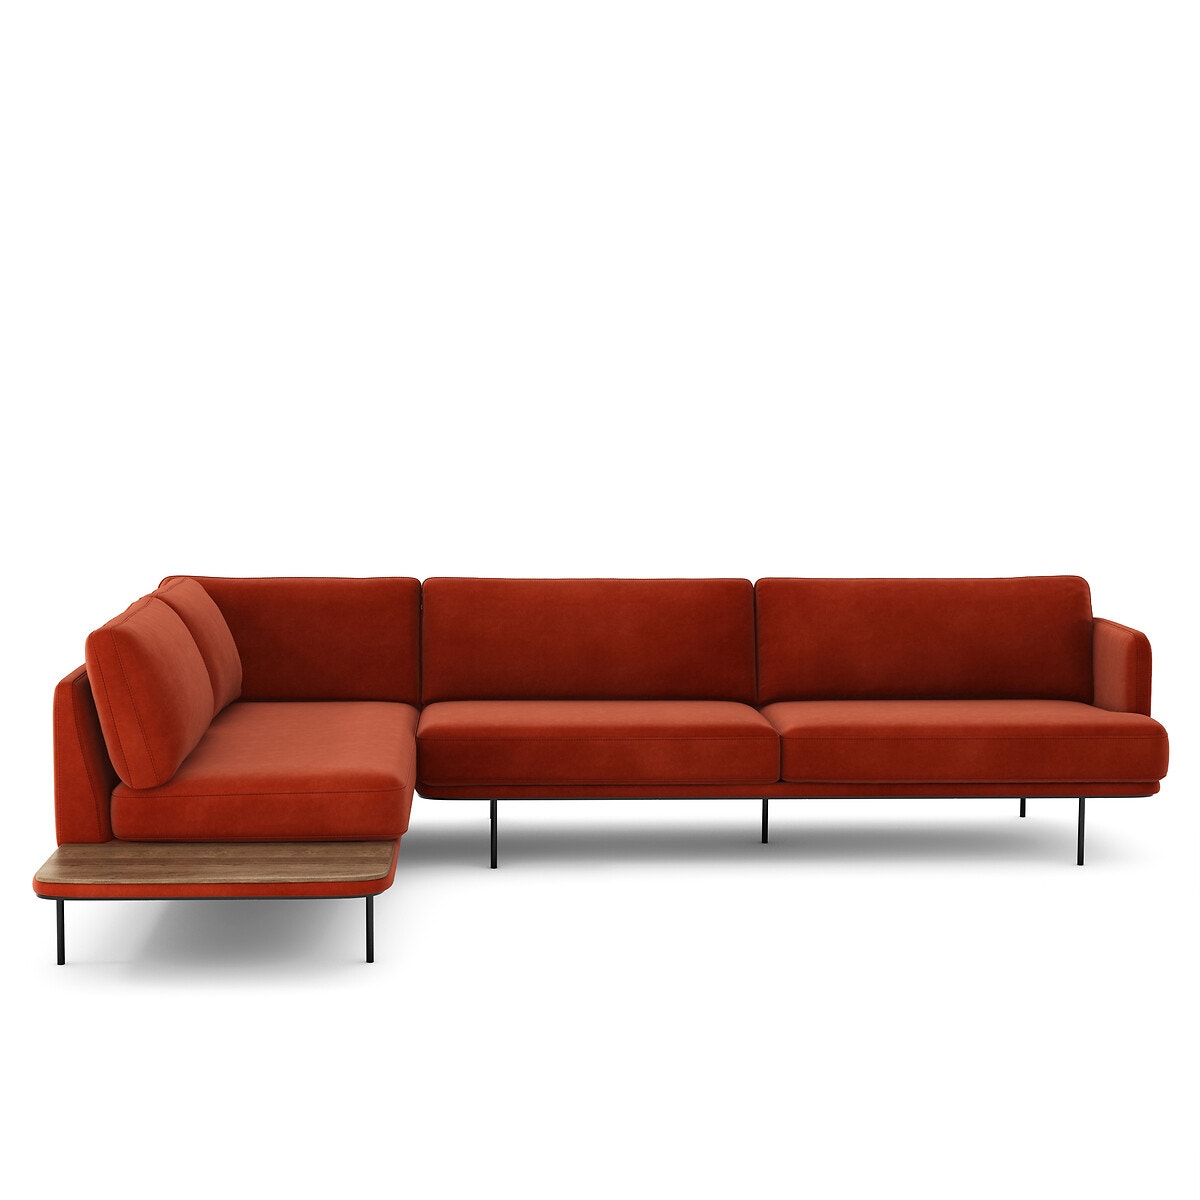 Σπίτι > Έπιπλα > Καθιστικό > Καναπέδες > Γωνιακοί καναπέδες Γωνιακός καναπές από βελούδο Μ221xΠ309xΥ80cm